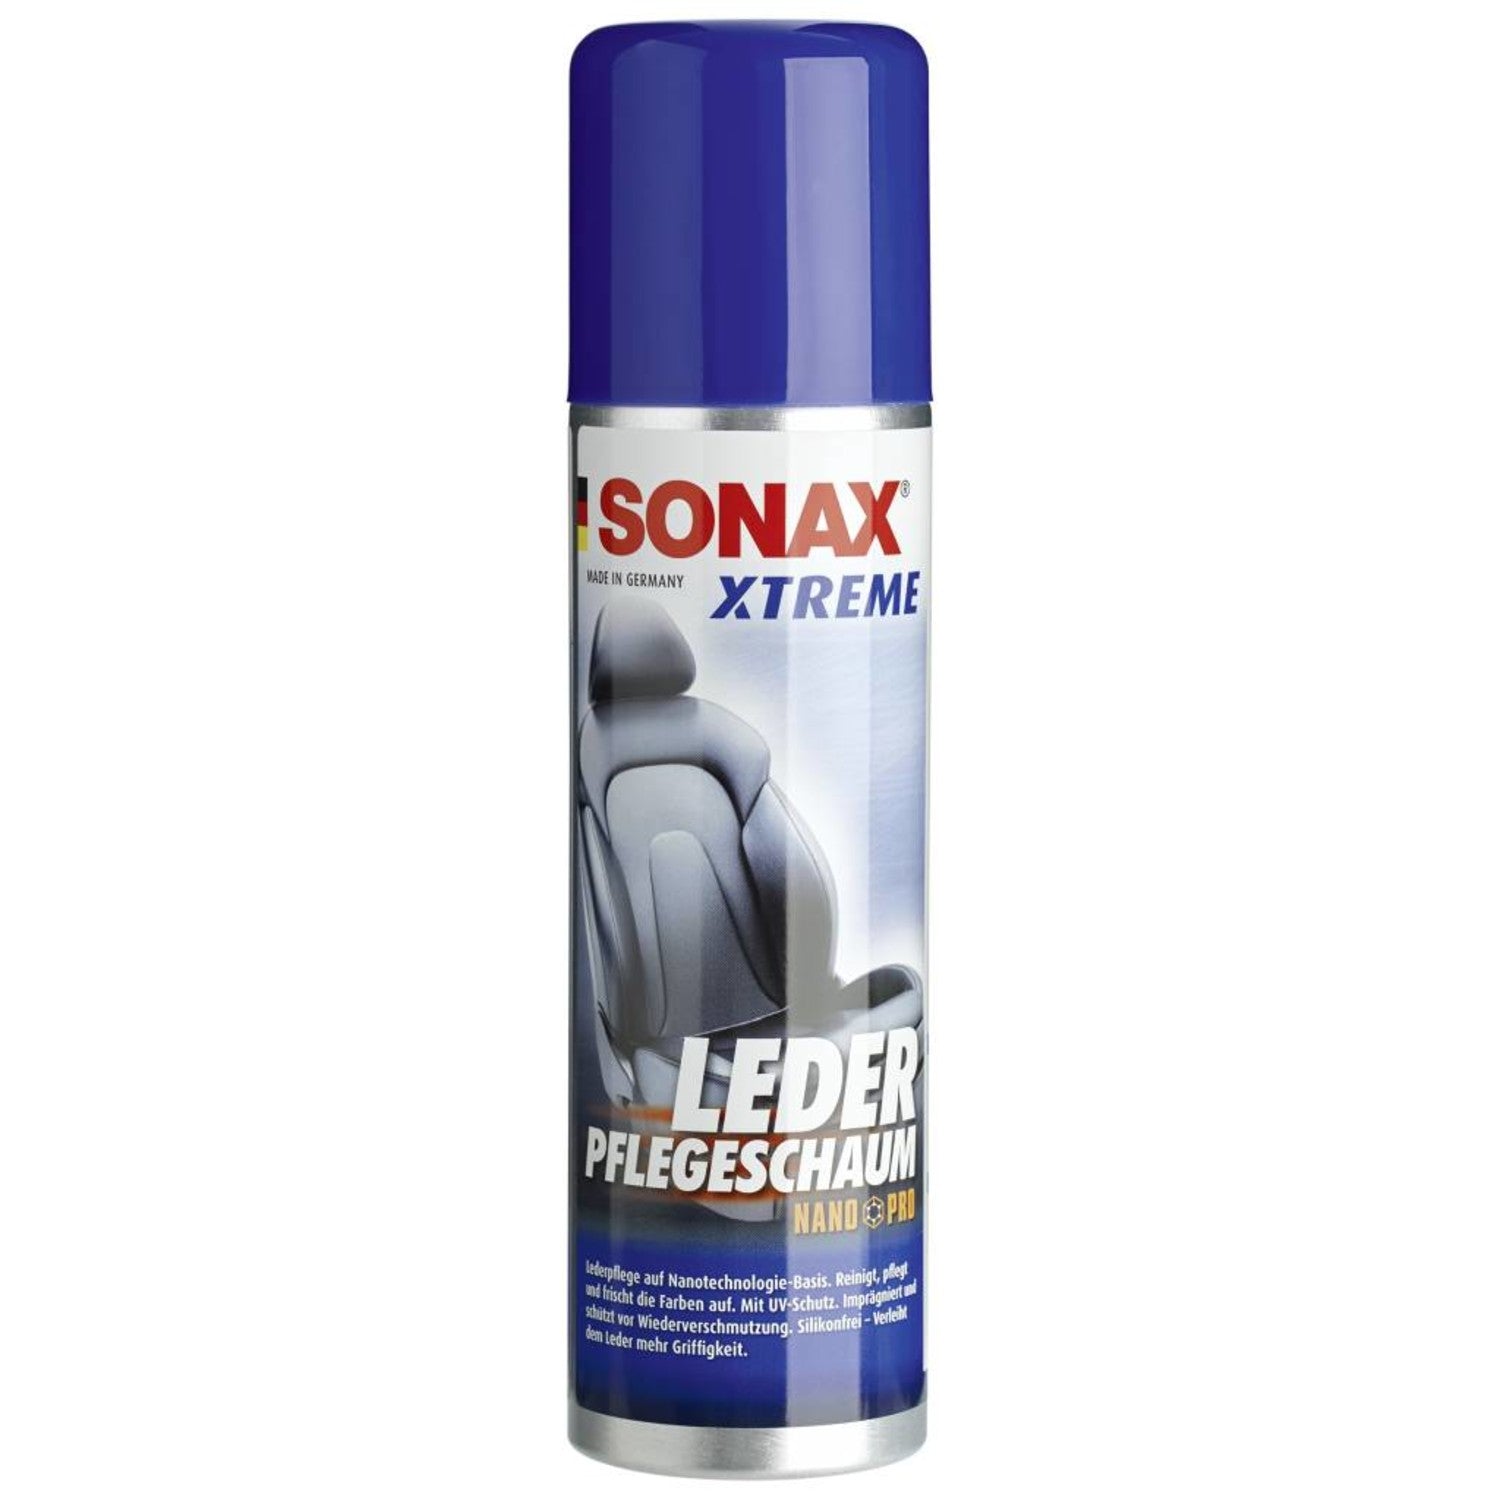 Sonax Xtreme Lederpflegeschaum